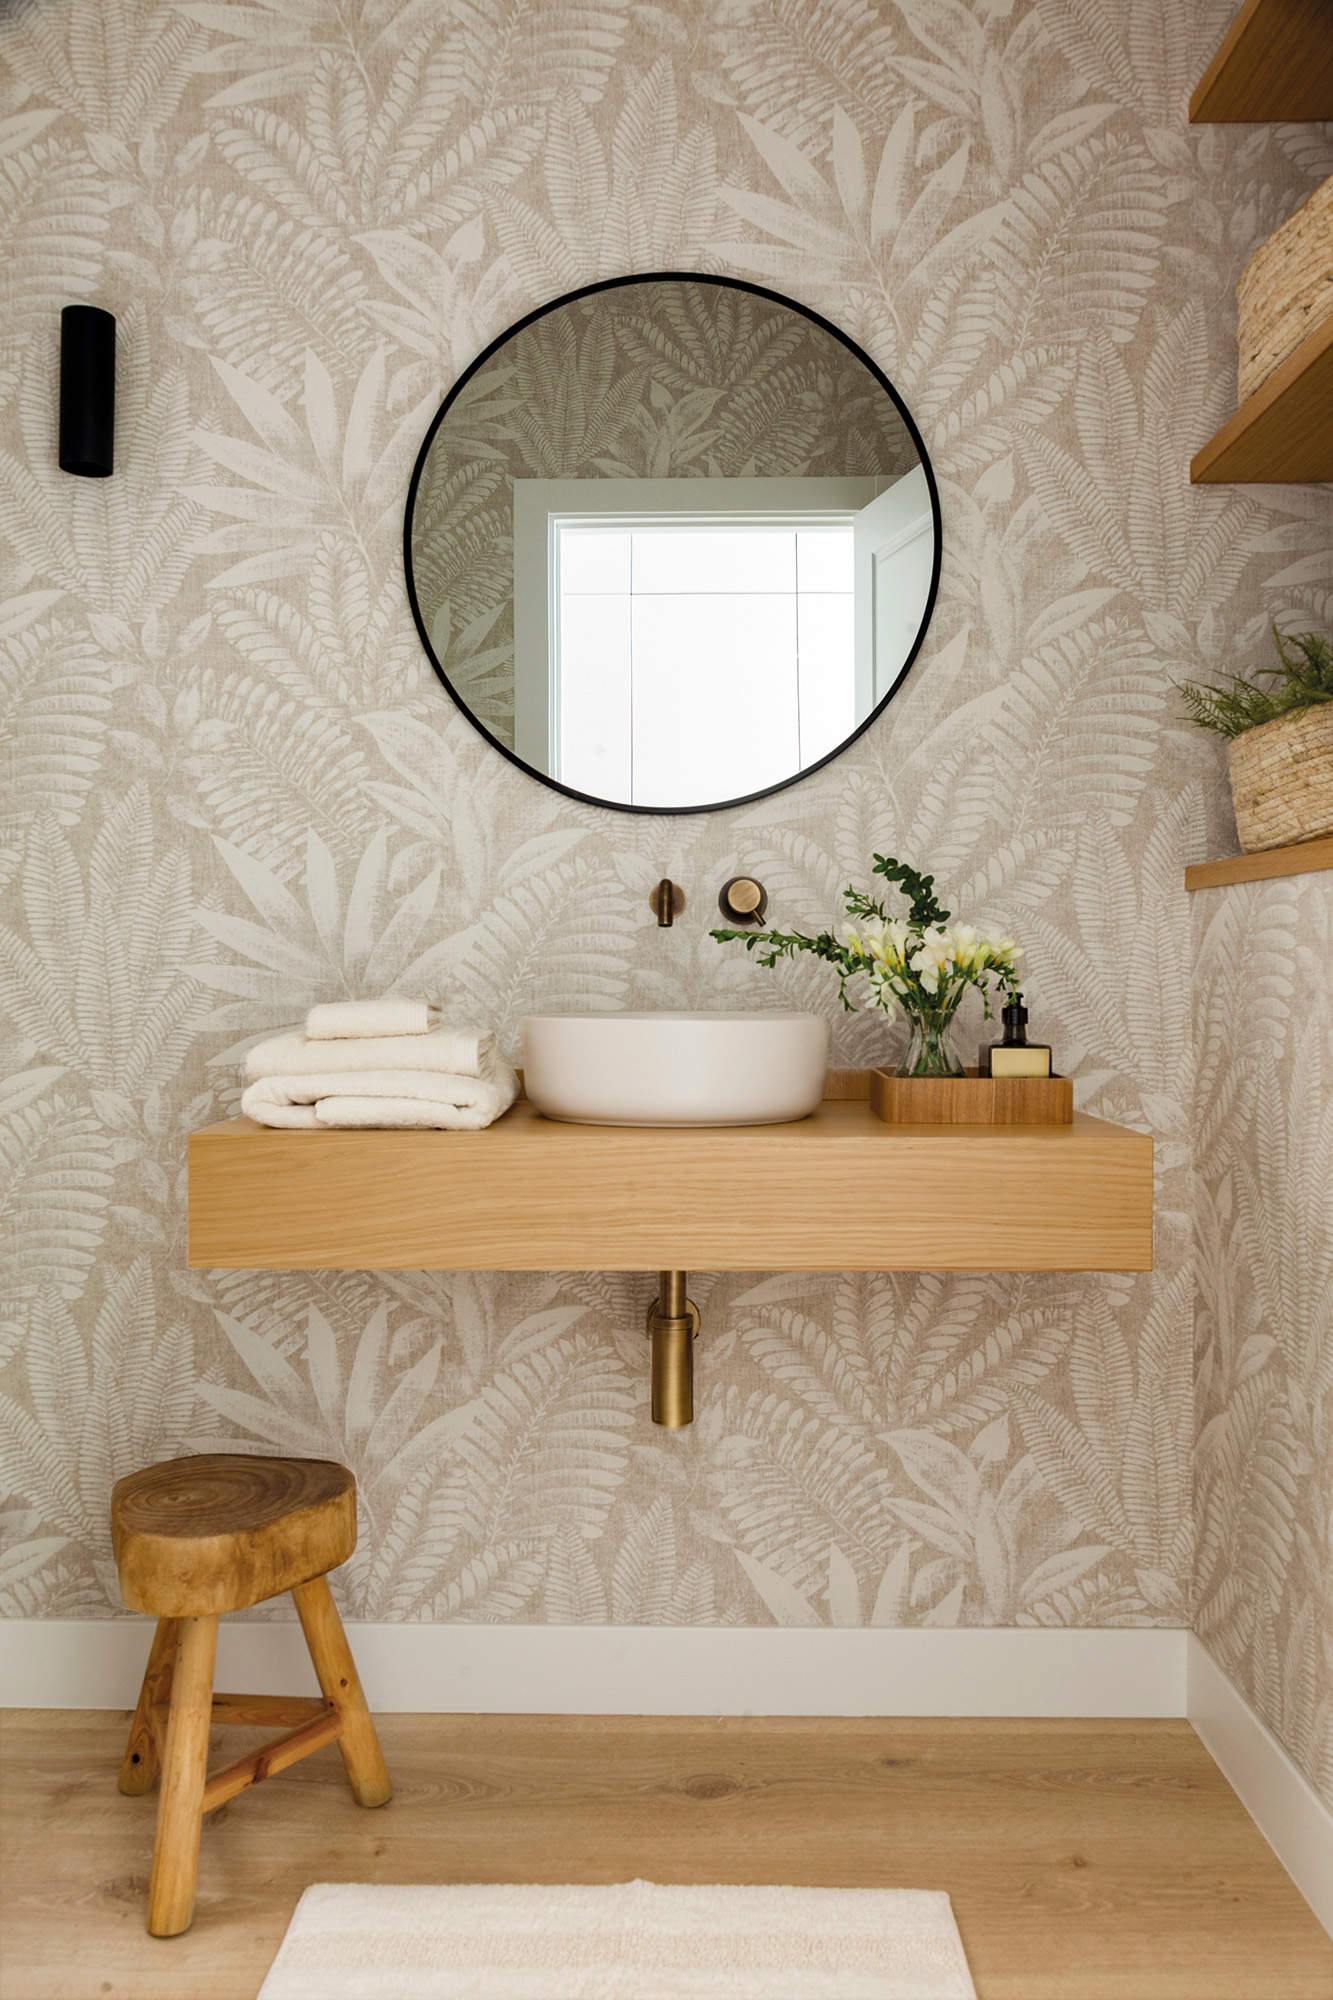 Baño mini decorado con papel pintado en las paredes.